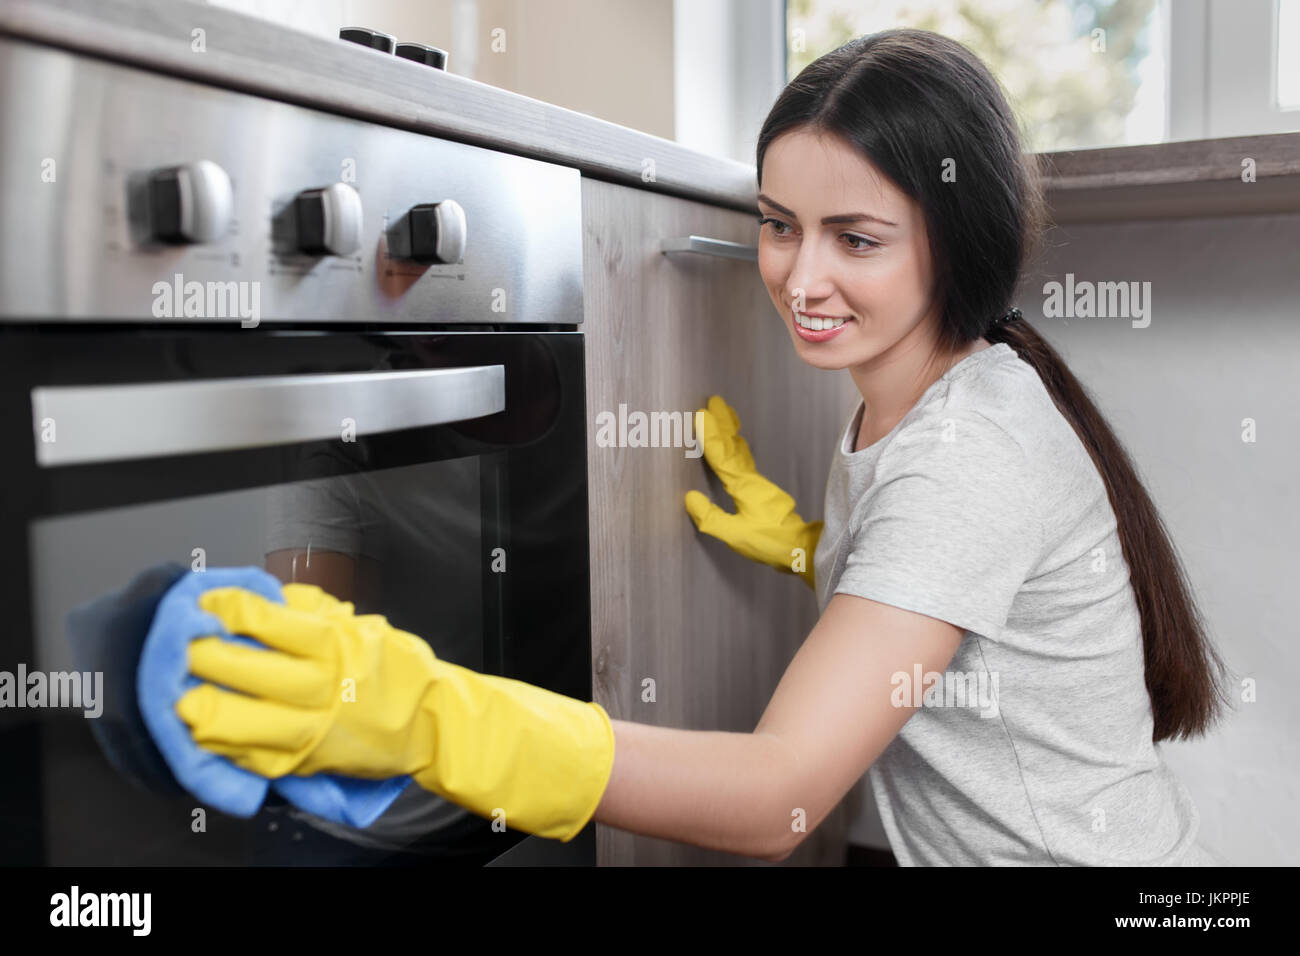 woman polishing oven Stock Photo